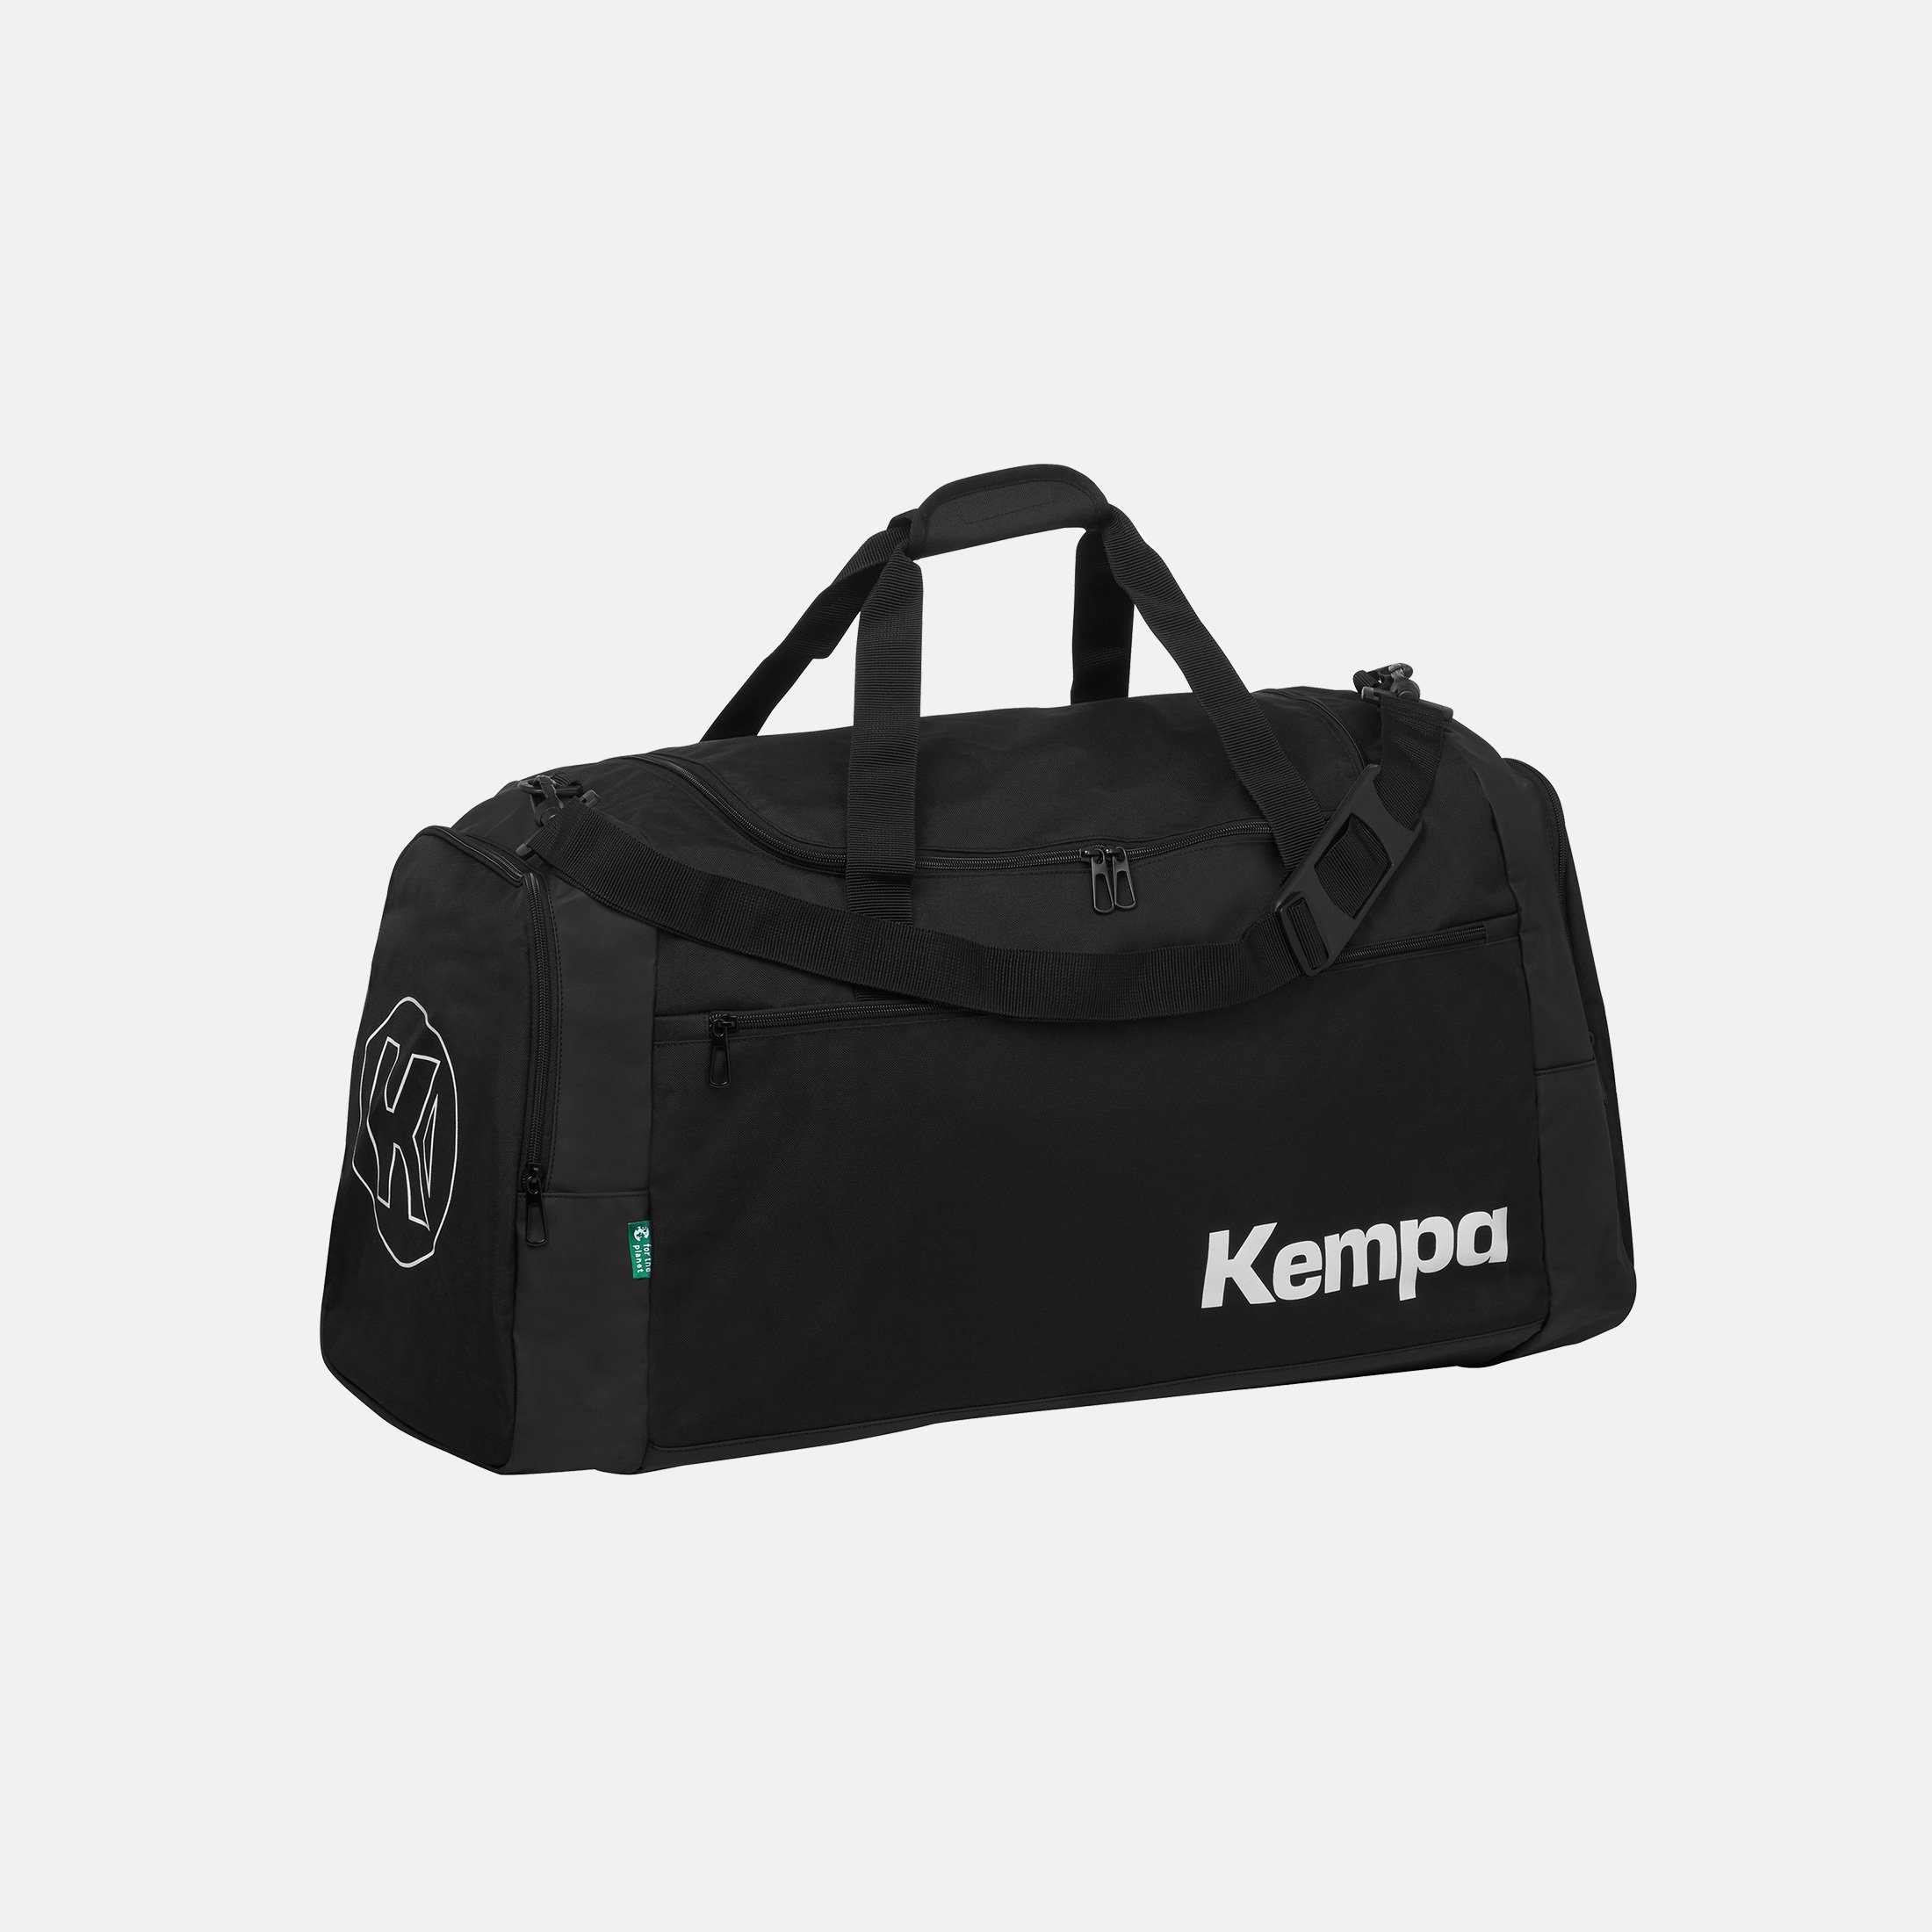 Kempa Handballtaschen online kaufen OTTO 